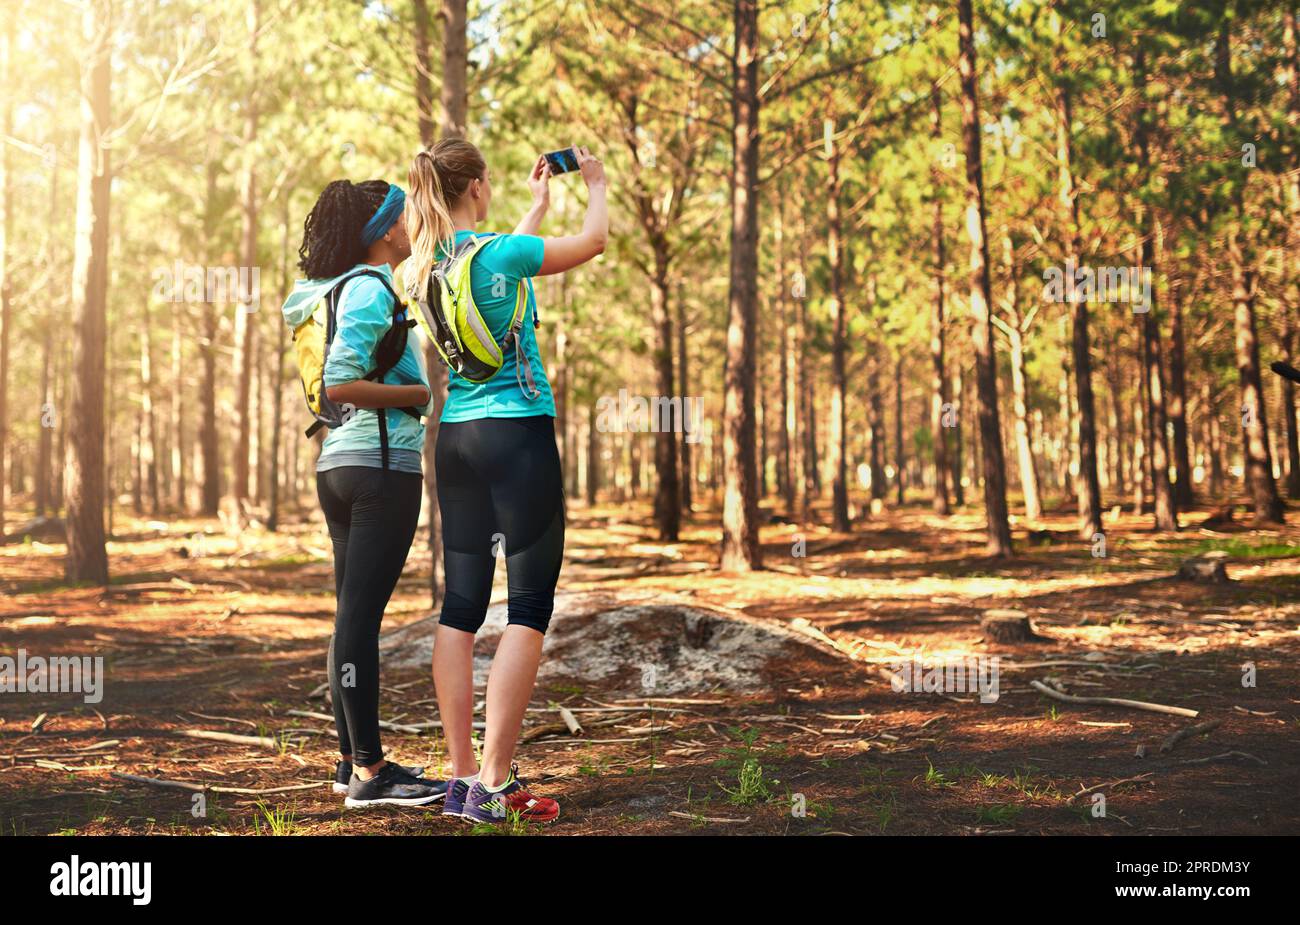 Nehmen Sie nichts als Erinnerungen mit. Zwei sportliche junge Frau, die in der Natur fotografiert. Stockfoto